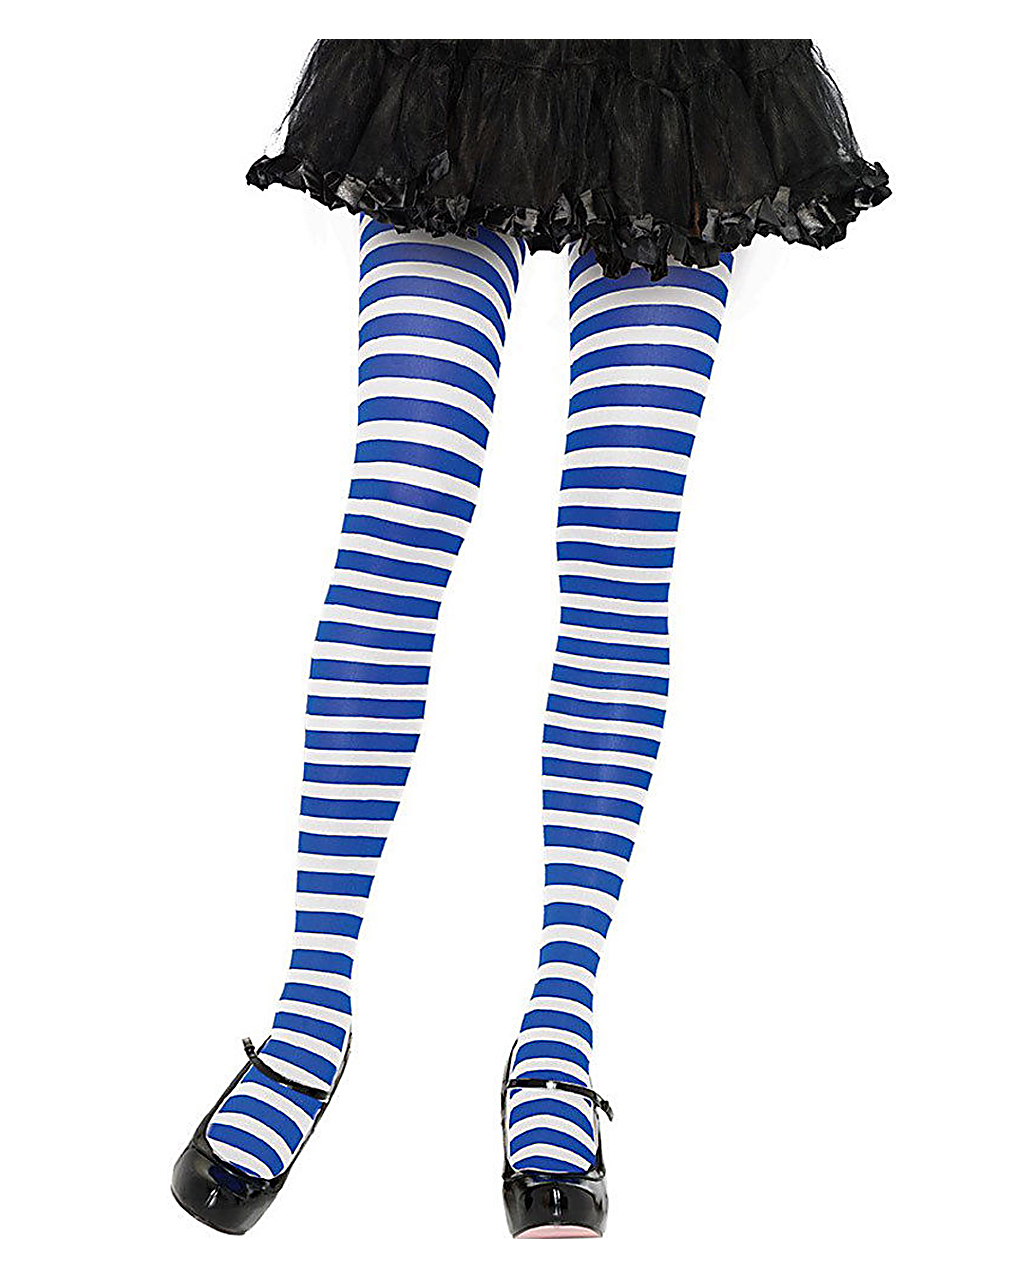 Striped Tights Blue-white, Costume Accessories